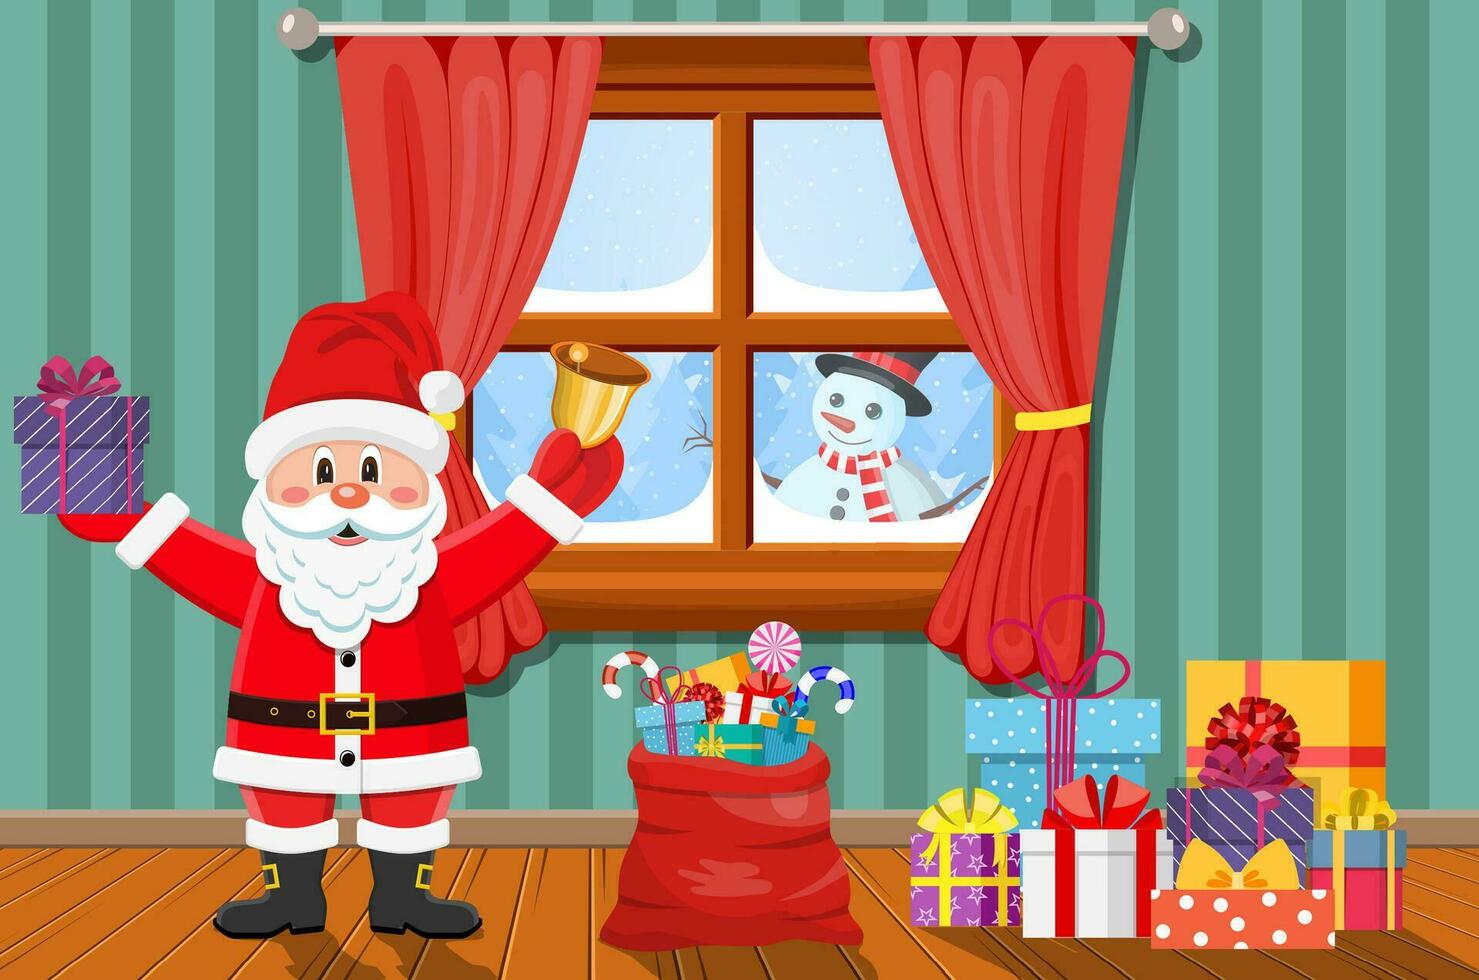 Santa im Zimmer mit Weihnachten Baum und Geschenke. vektor